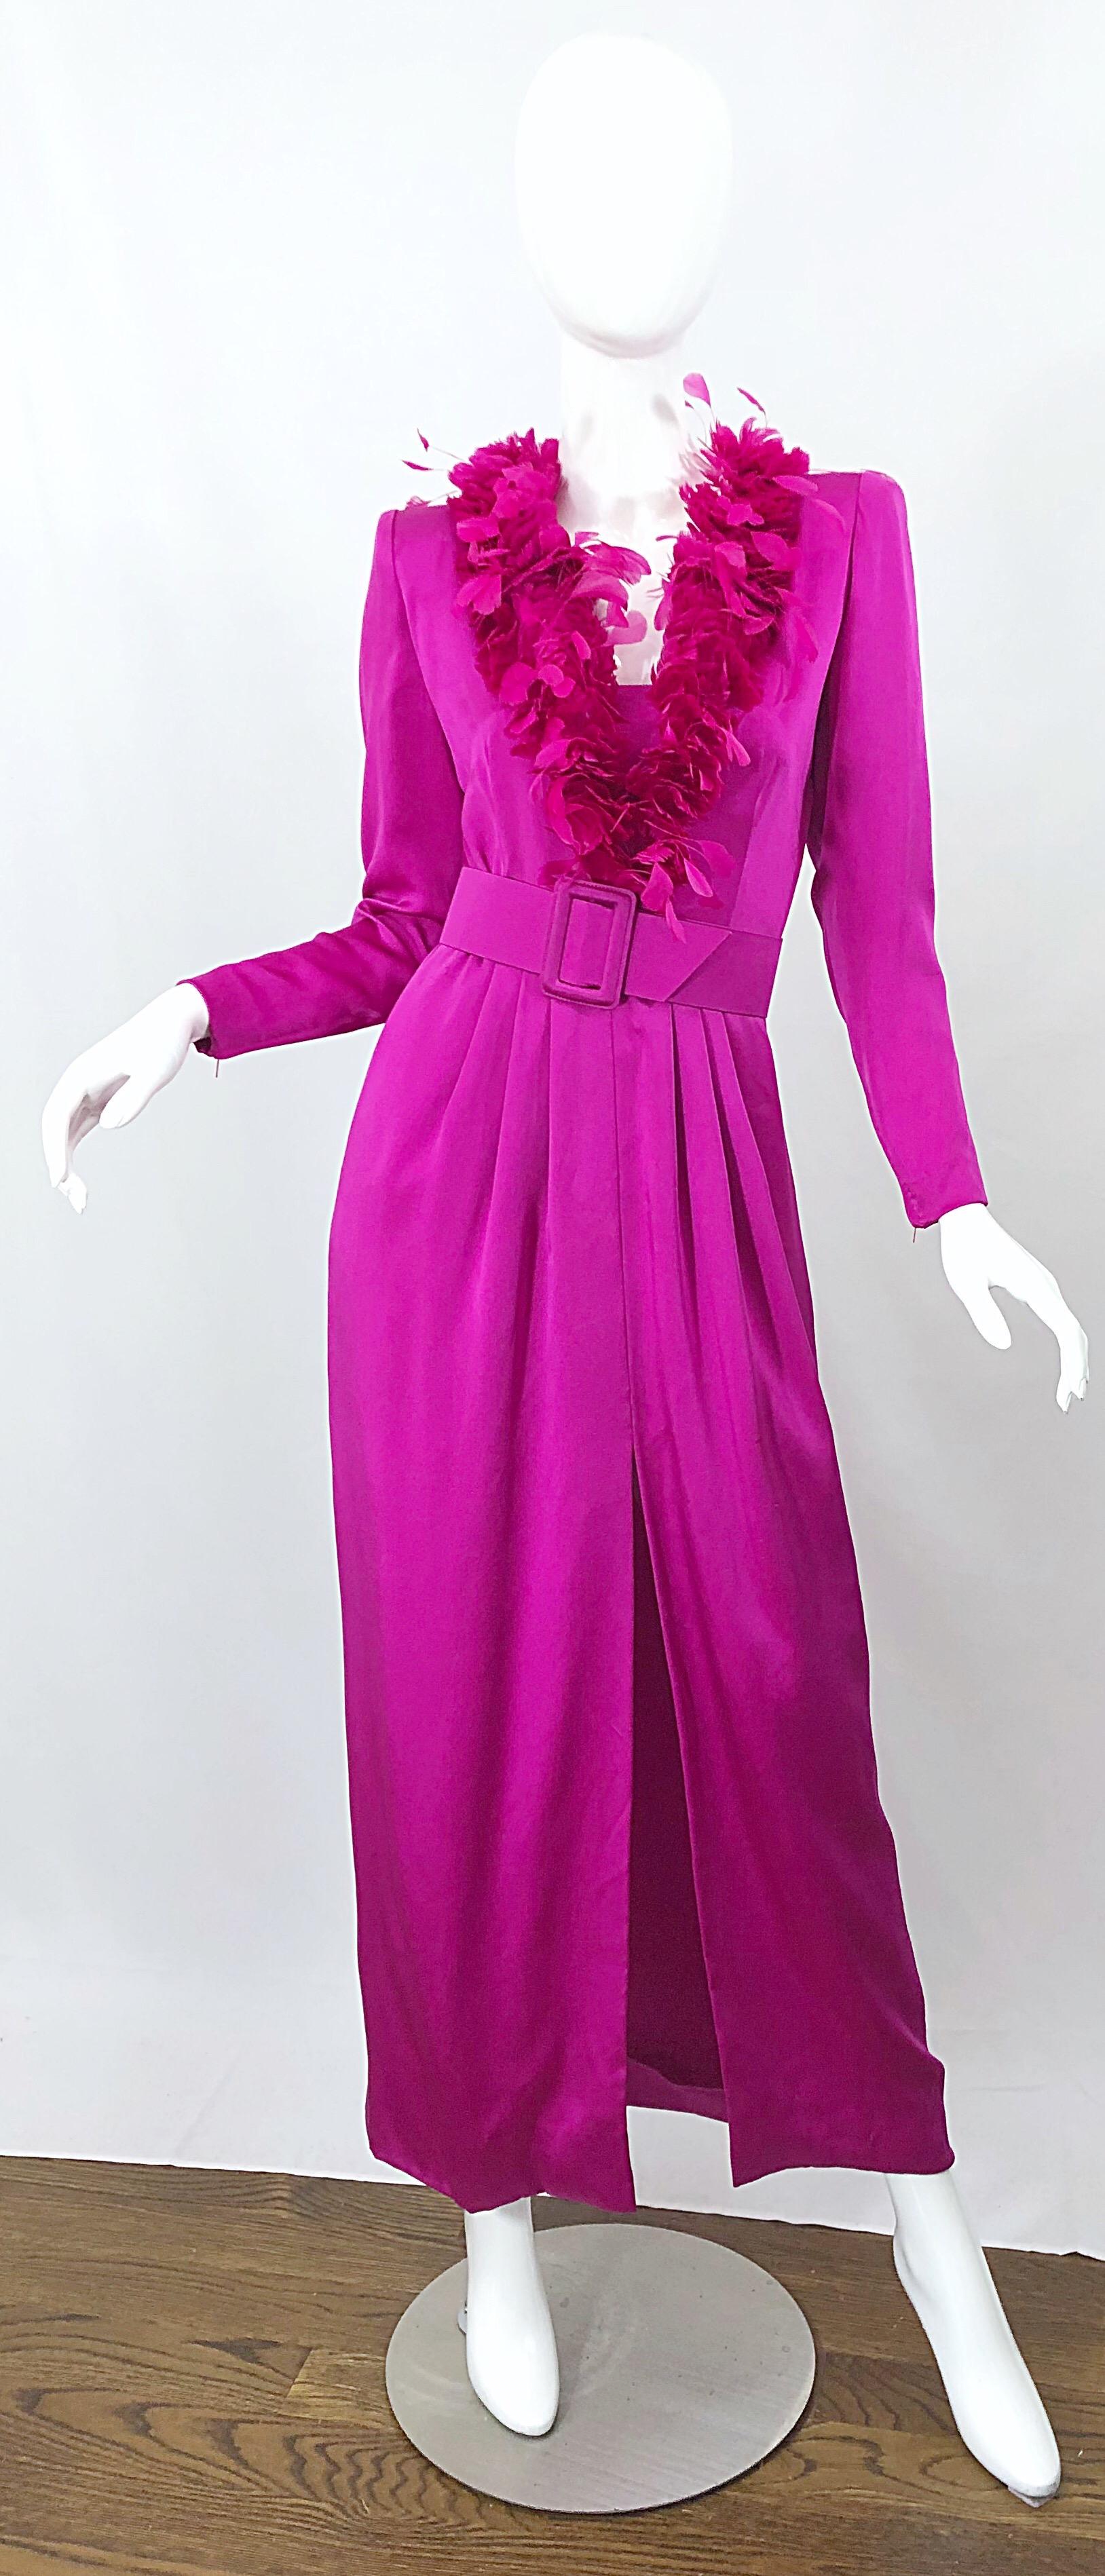 Spektakuläre Vintage frühen 80er Jahren GIVENCHY Couture für Amen Wardy nummeriert lange Ärmel heißen rosa Feder verkrustete Seide Kleid! Dieses Abendkleid hat alles, was man sich wünschen kann! Hunderte von handgenähten Federn entlang des